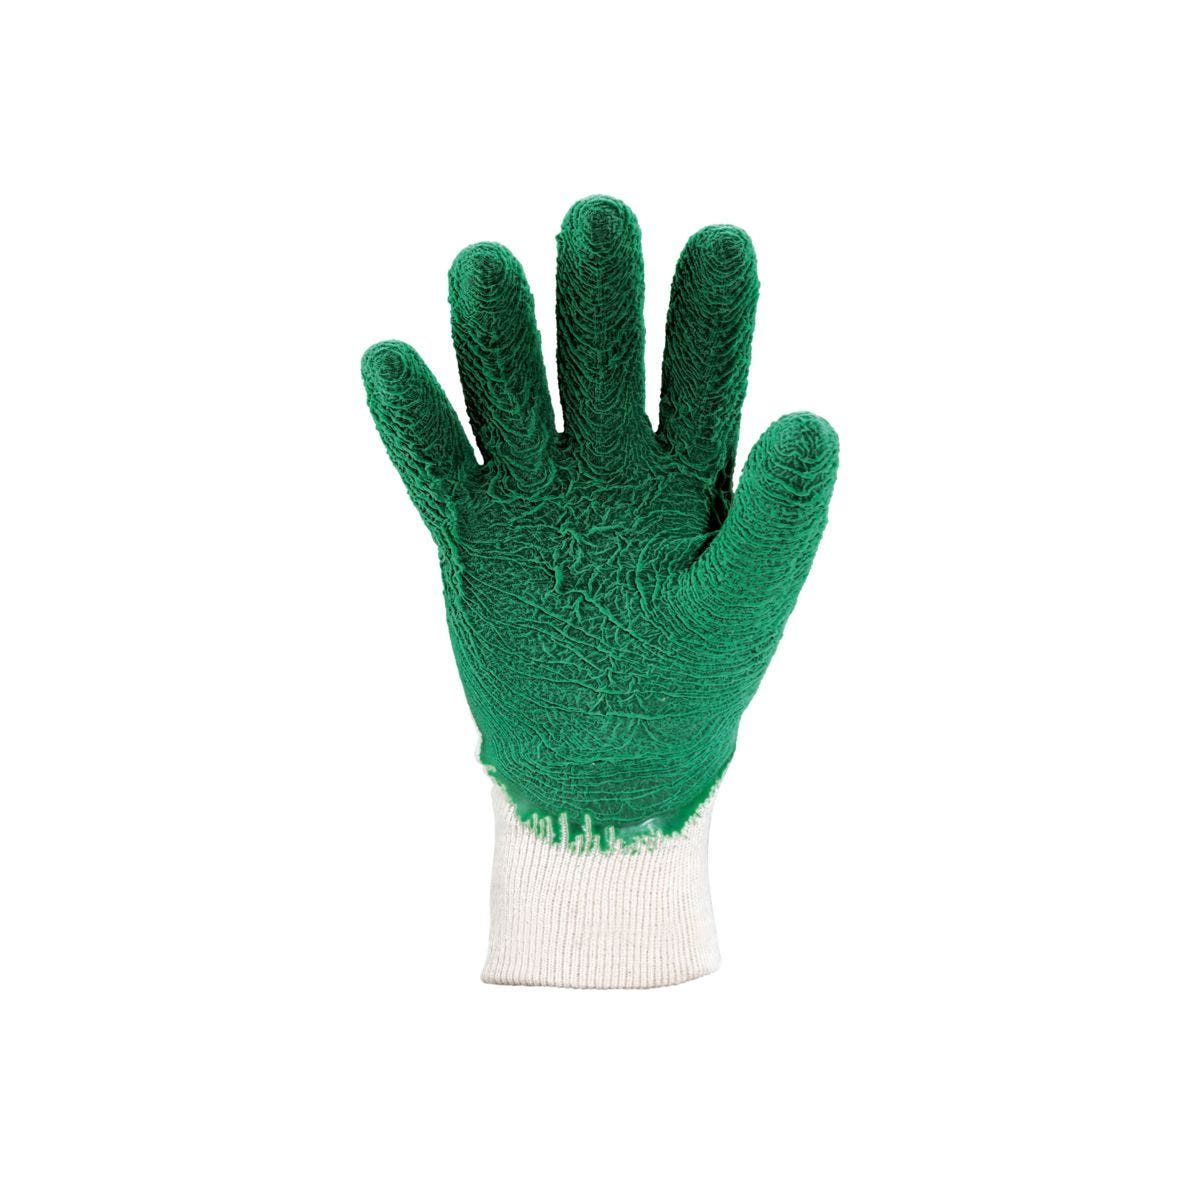 Gants latex crépé vert qualité supérieure - COVERGUARD - Taille M-8 1